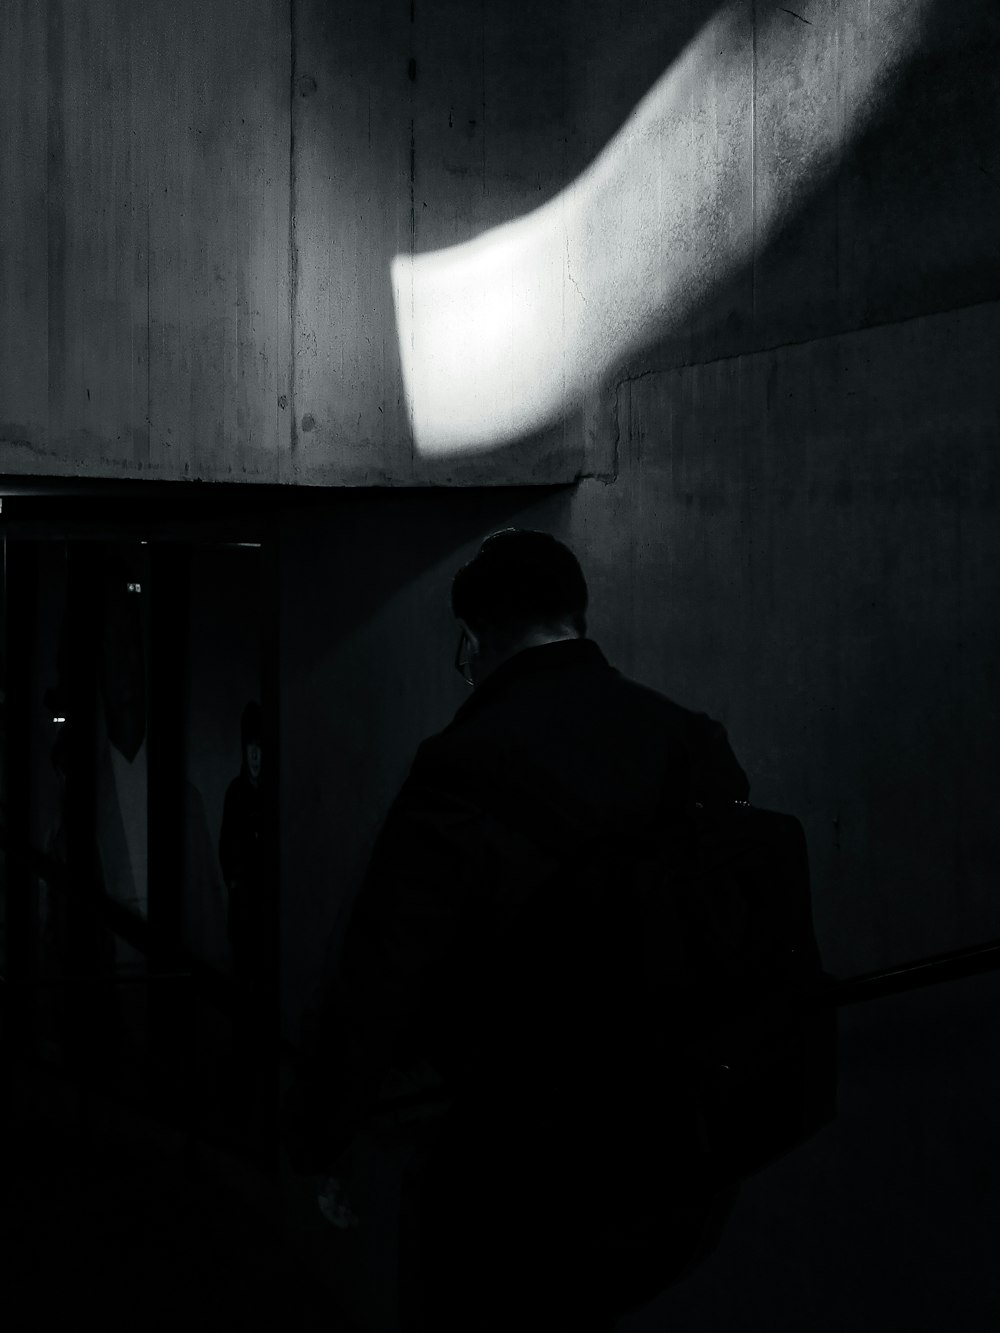 a person in a dark room